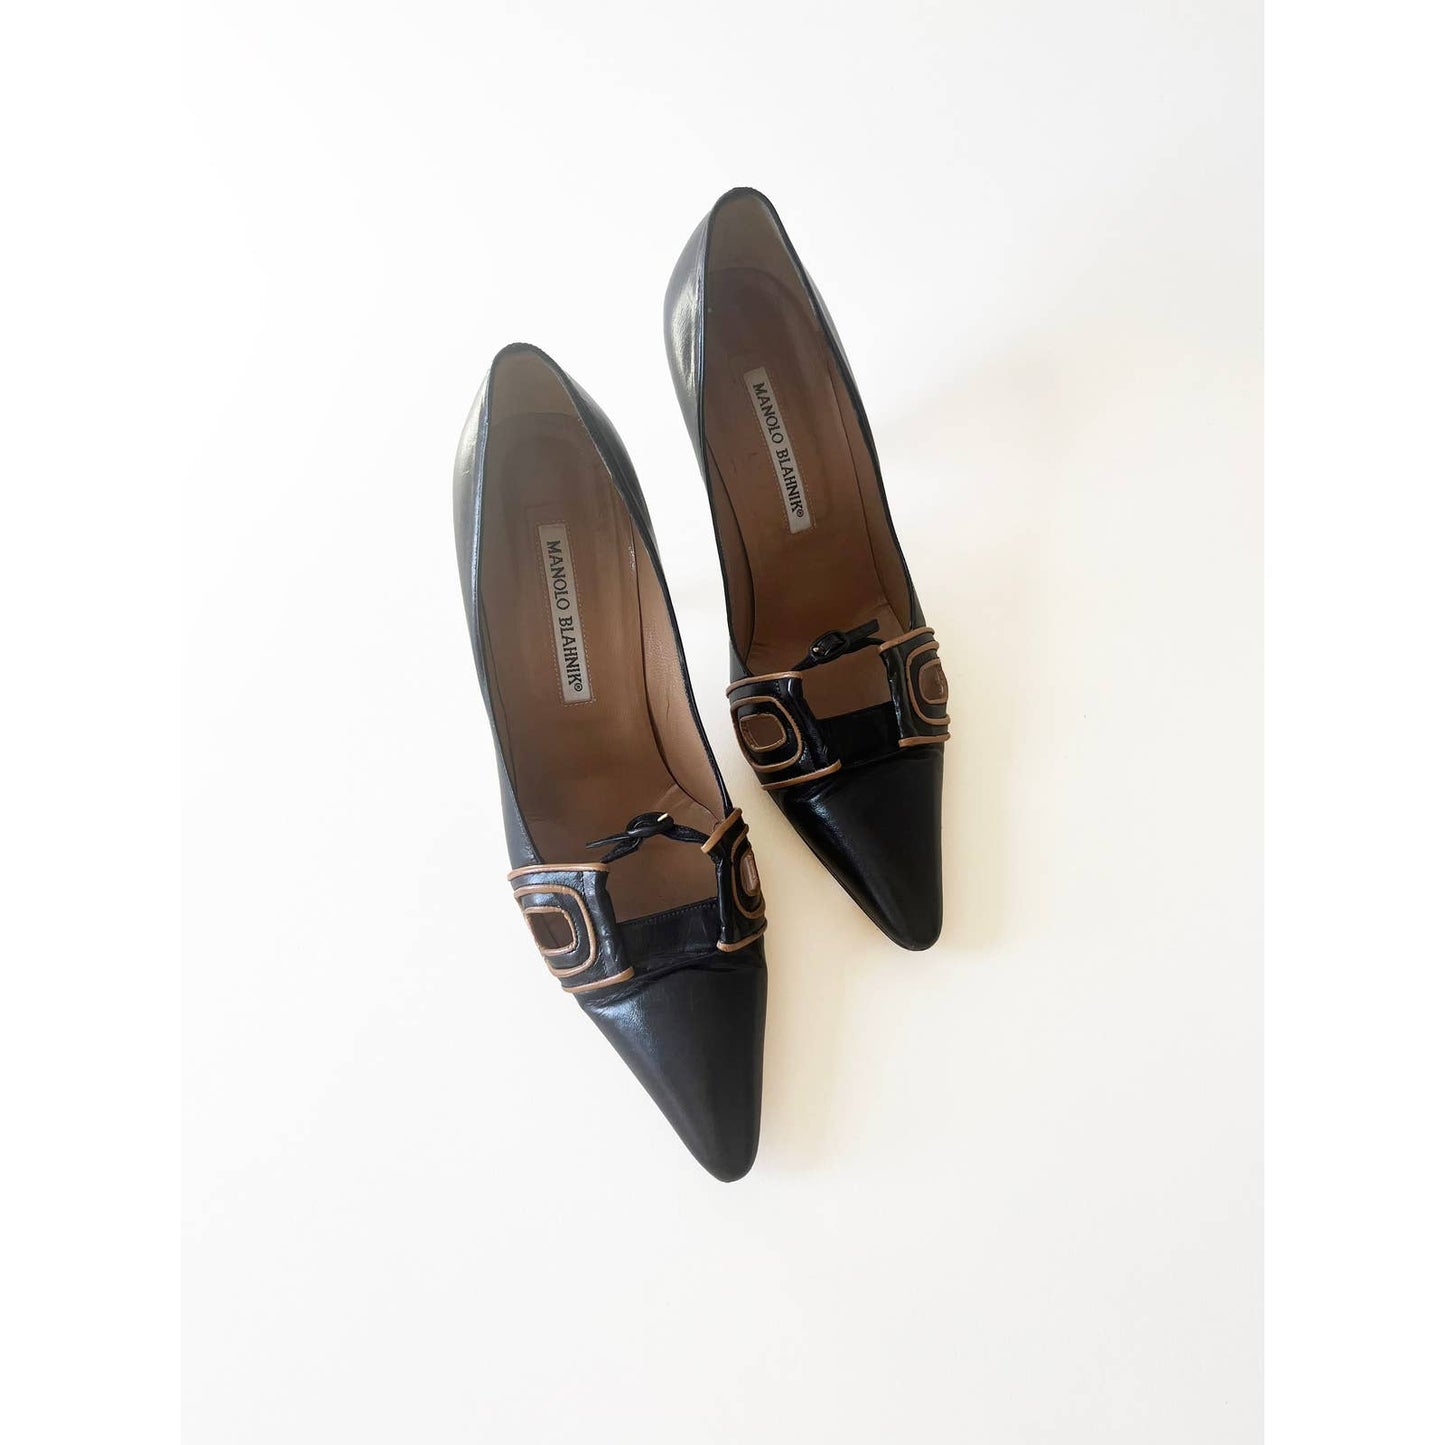 Vintage Manolo Blahnik Heels with Buckle Detail | Size 7 US